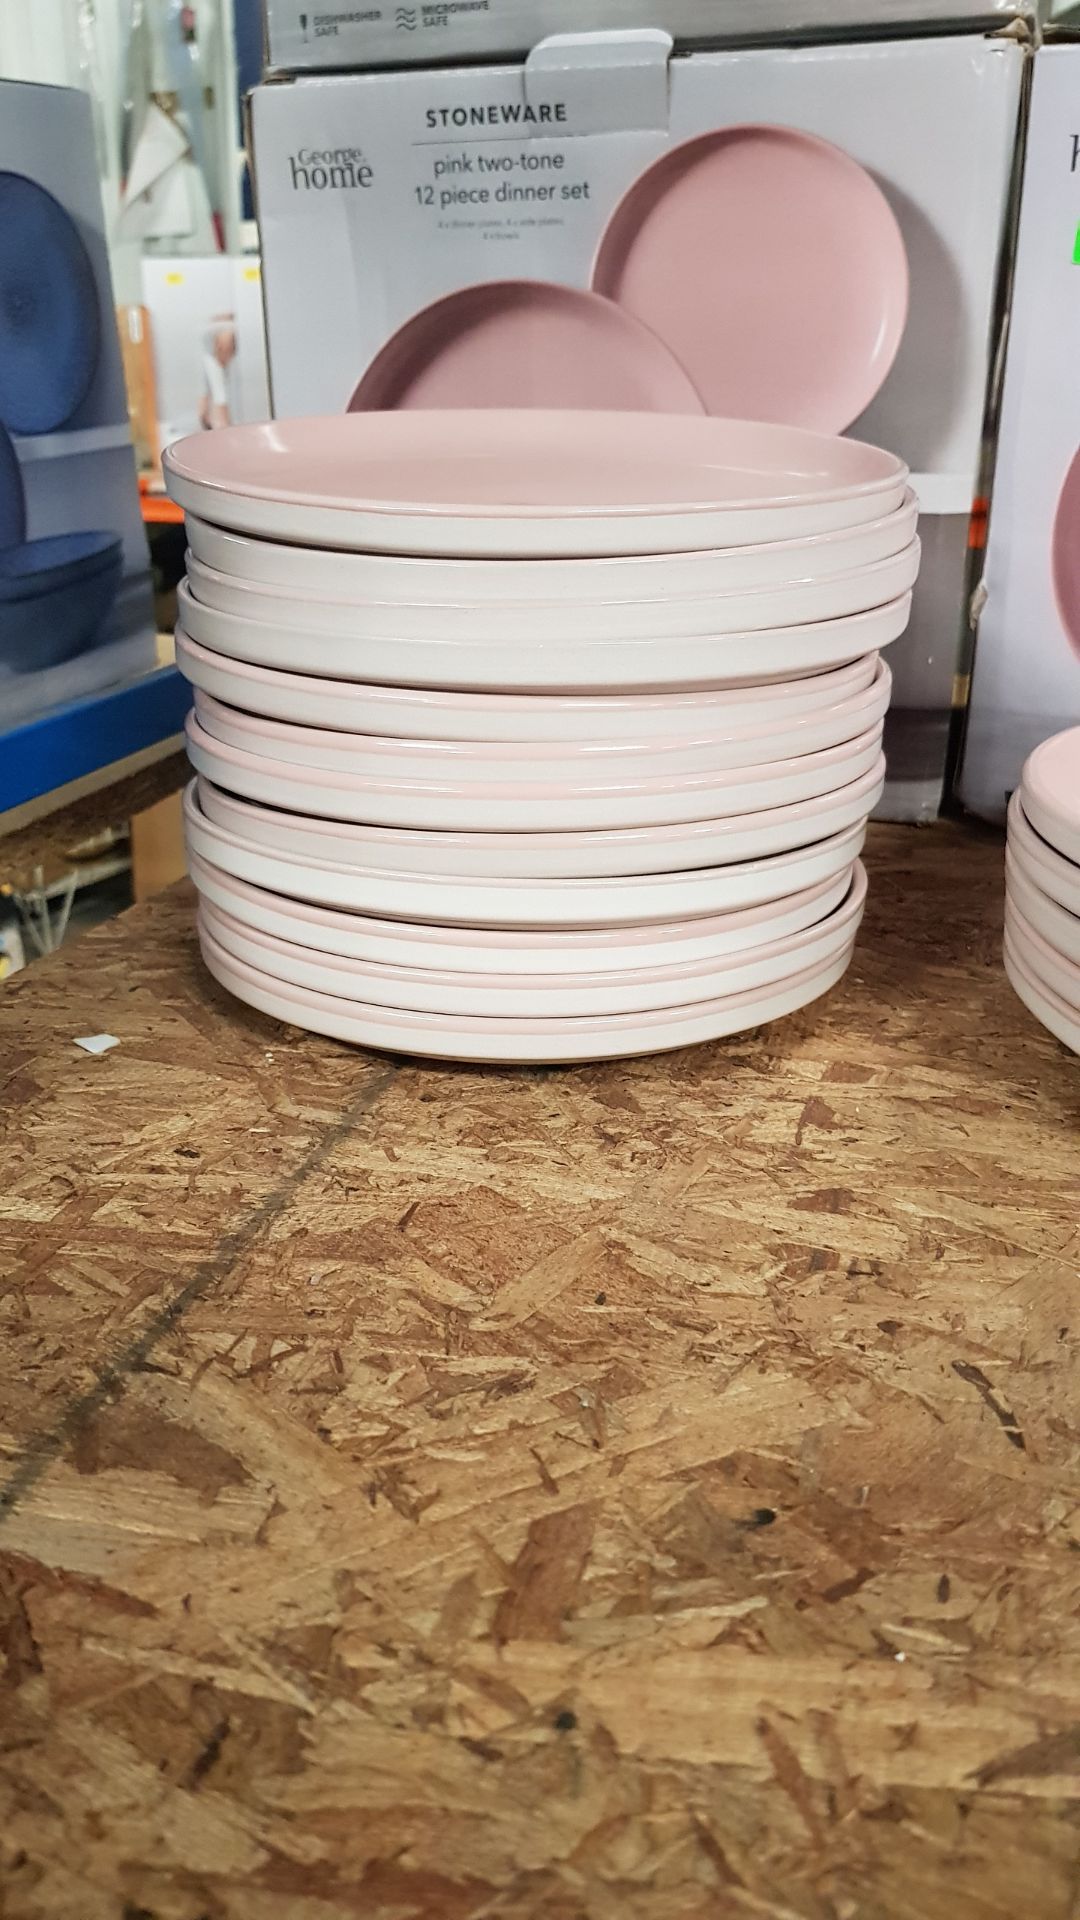 Description: (57/10D) Lot RRP £60 3x Stoneware Pink Two Tone 12 Piece Dinner Set RRP £20 Each Lot - Image 7 of 13